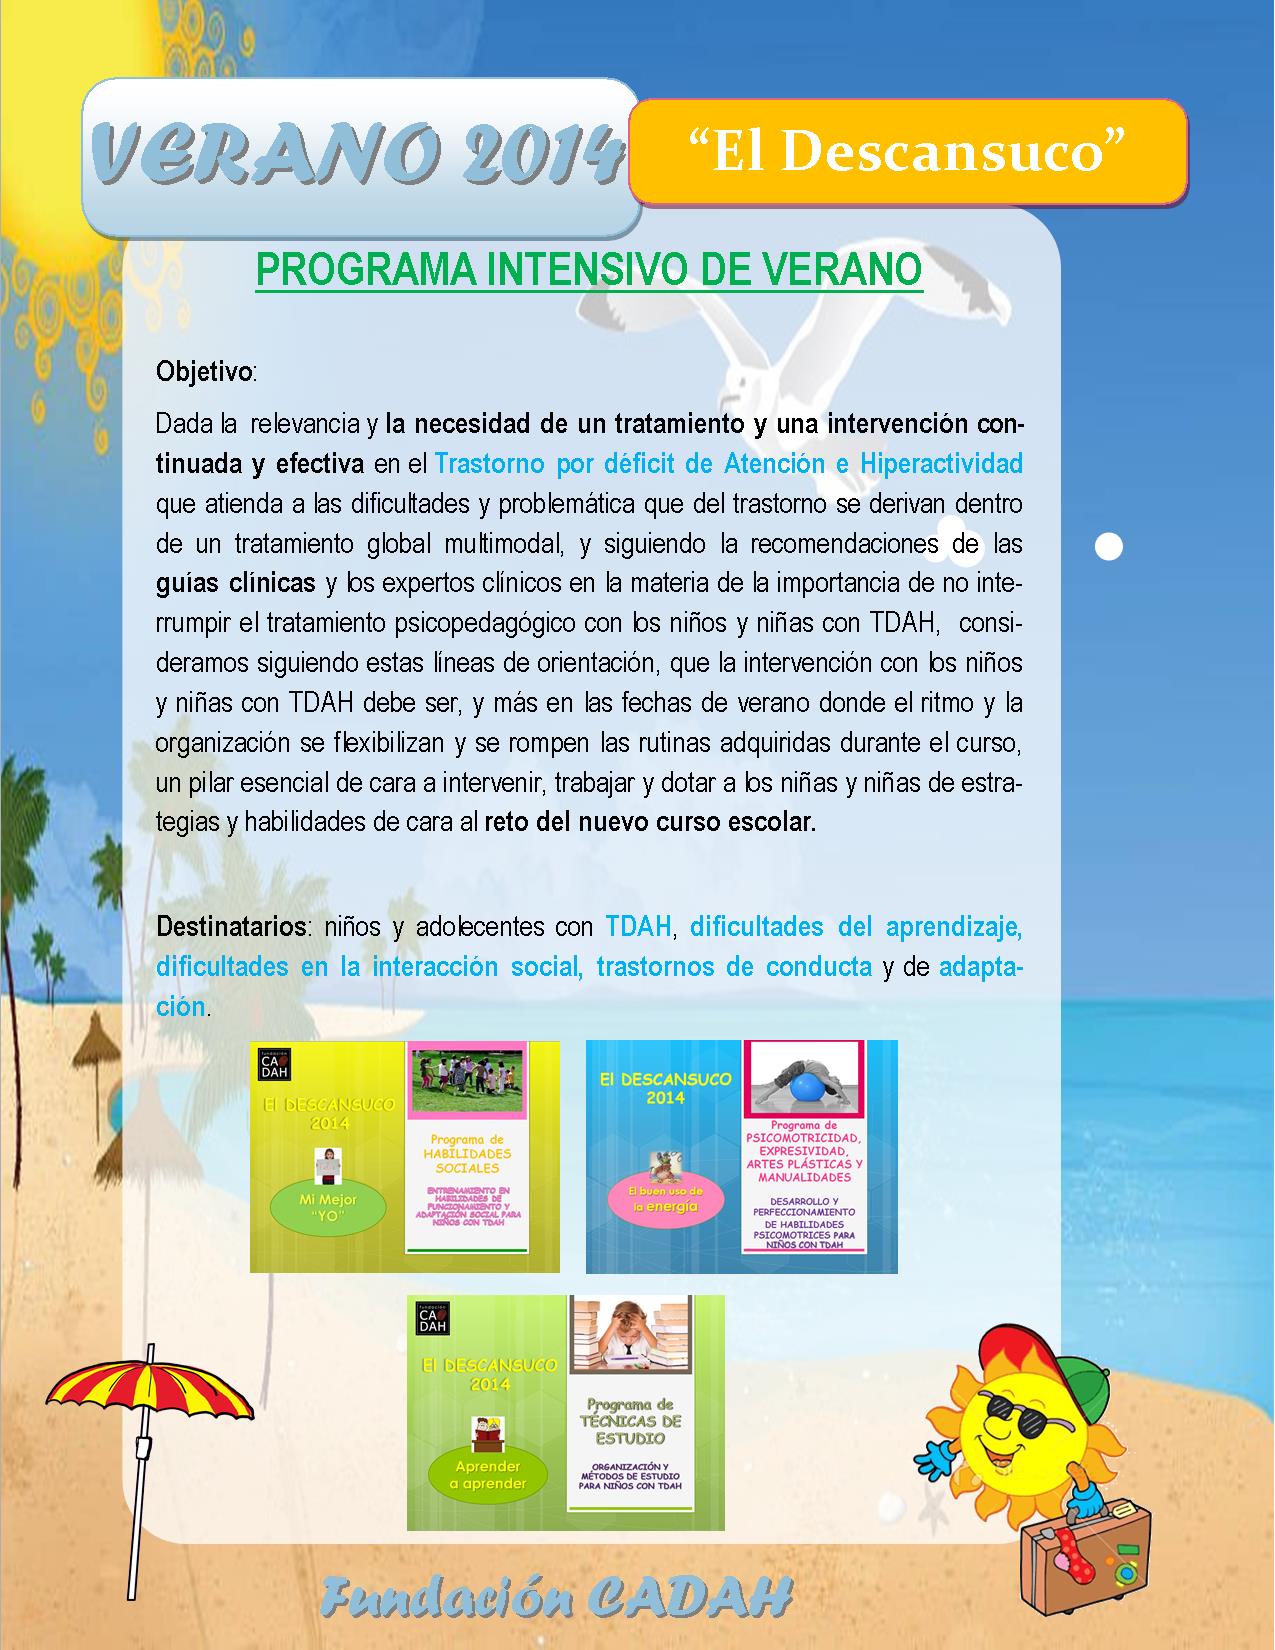 Programa de verano "EL DESCANSUCO" 2014